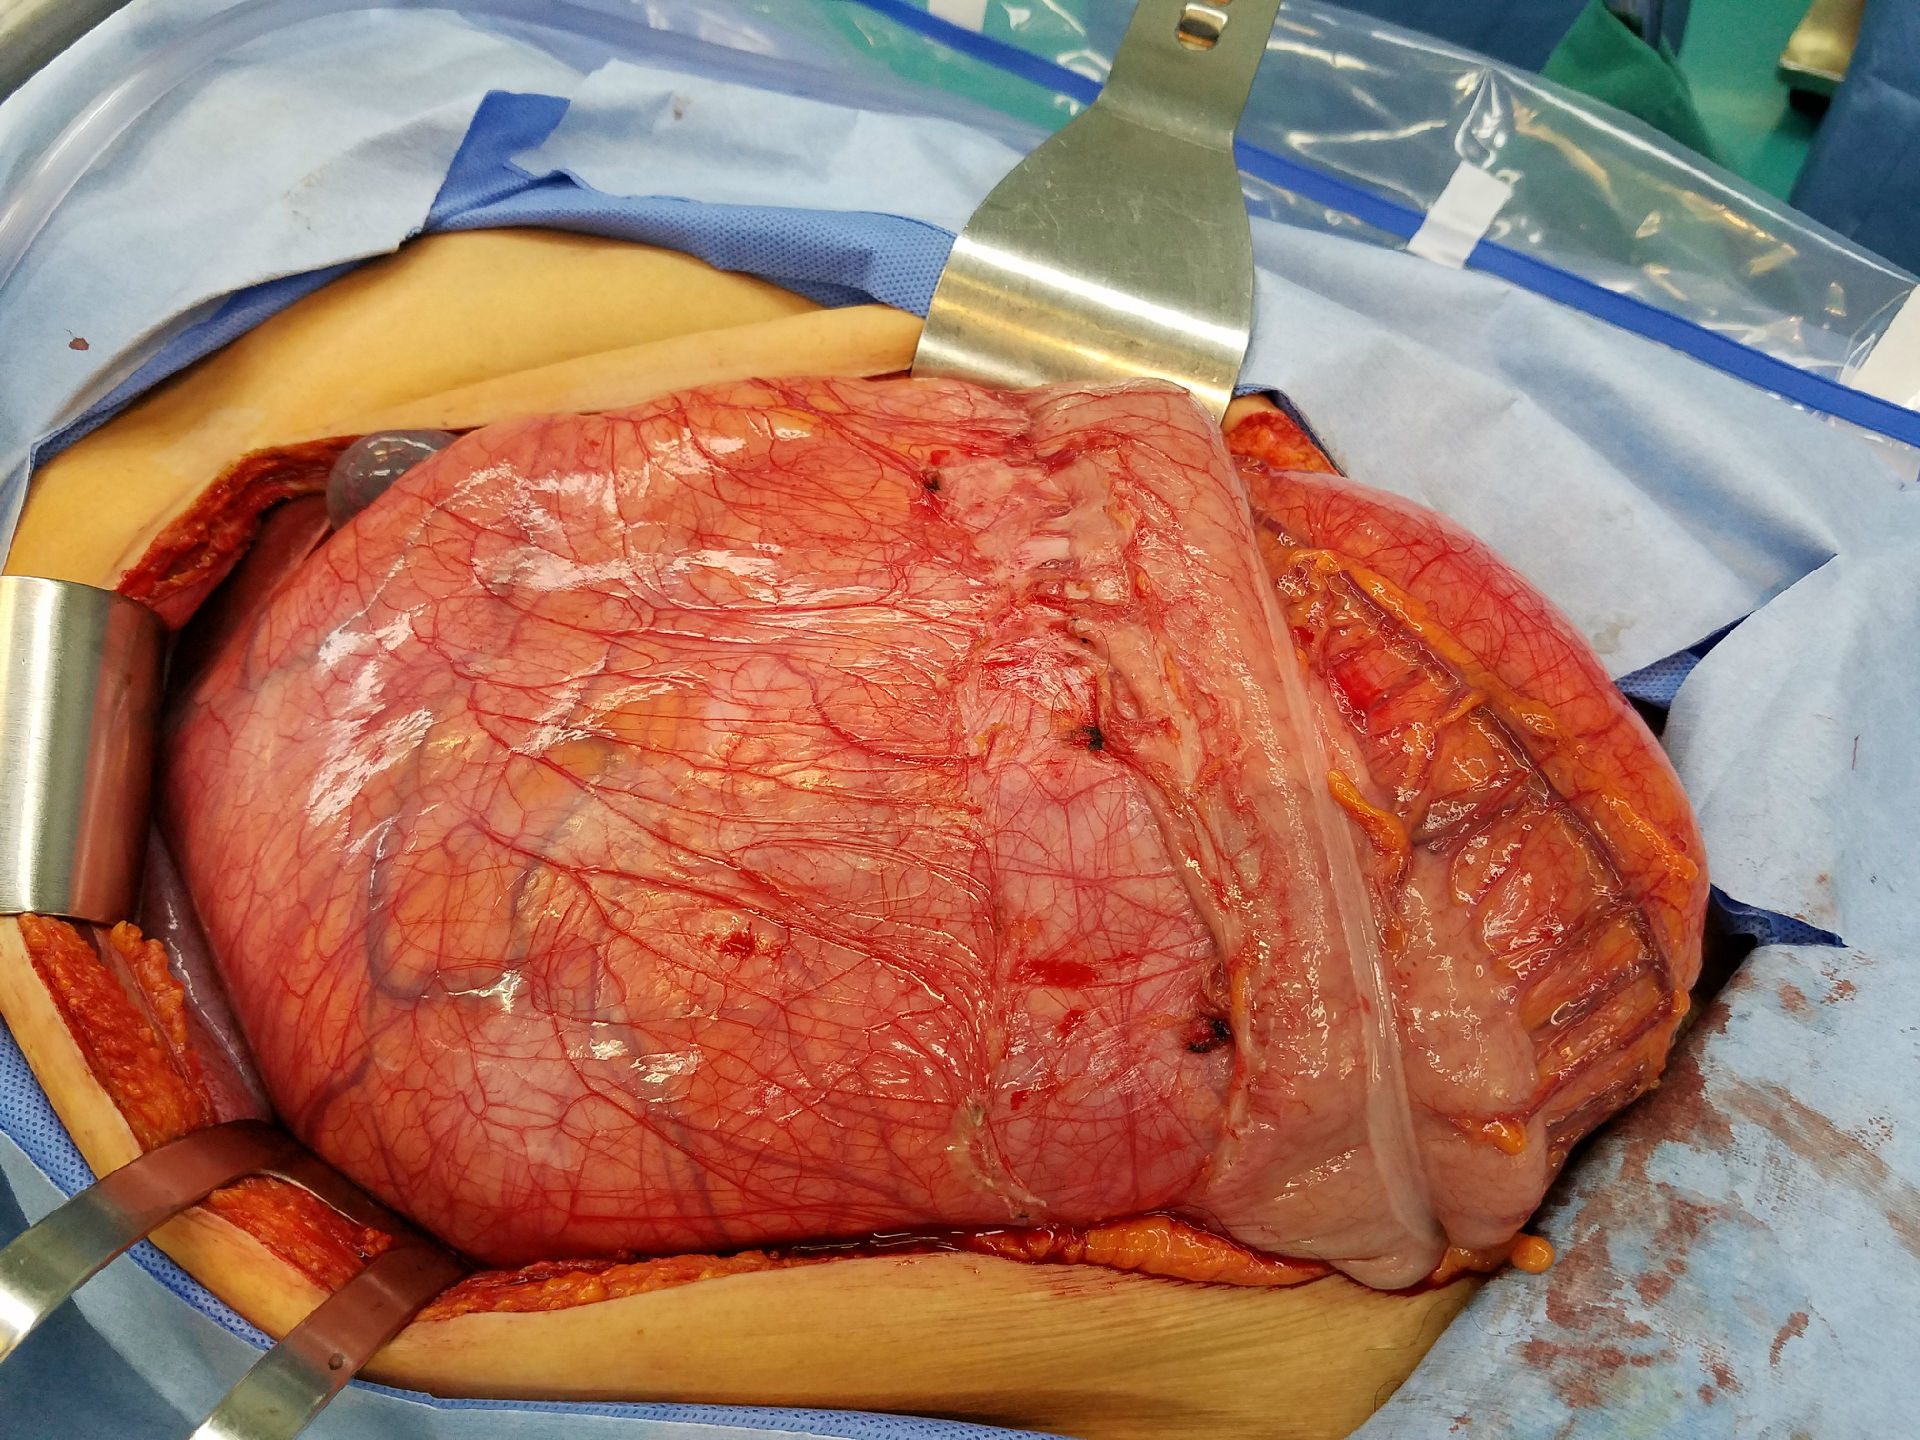 腹部肿瘤图片